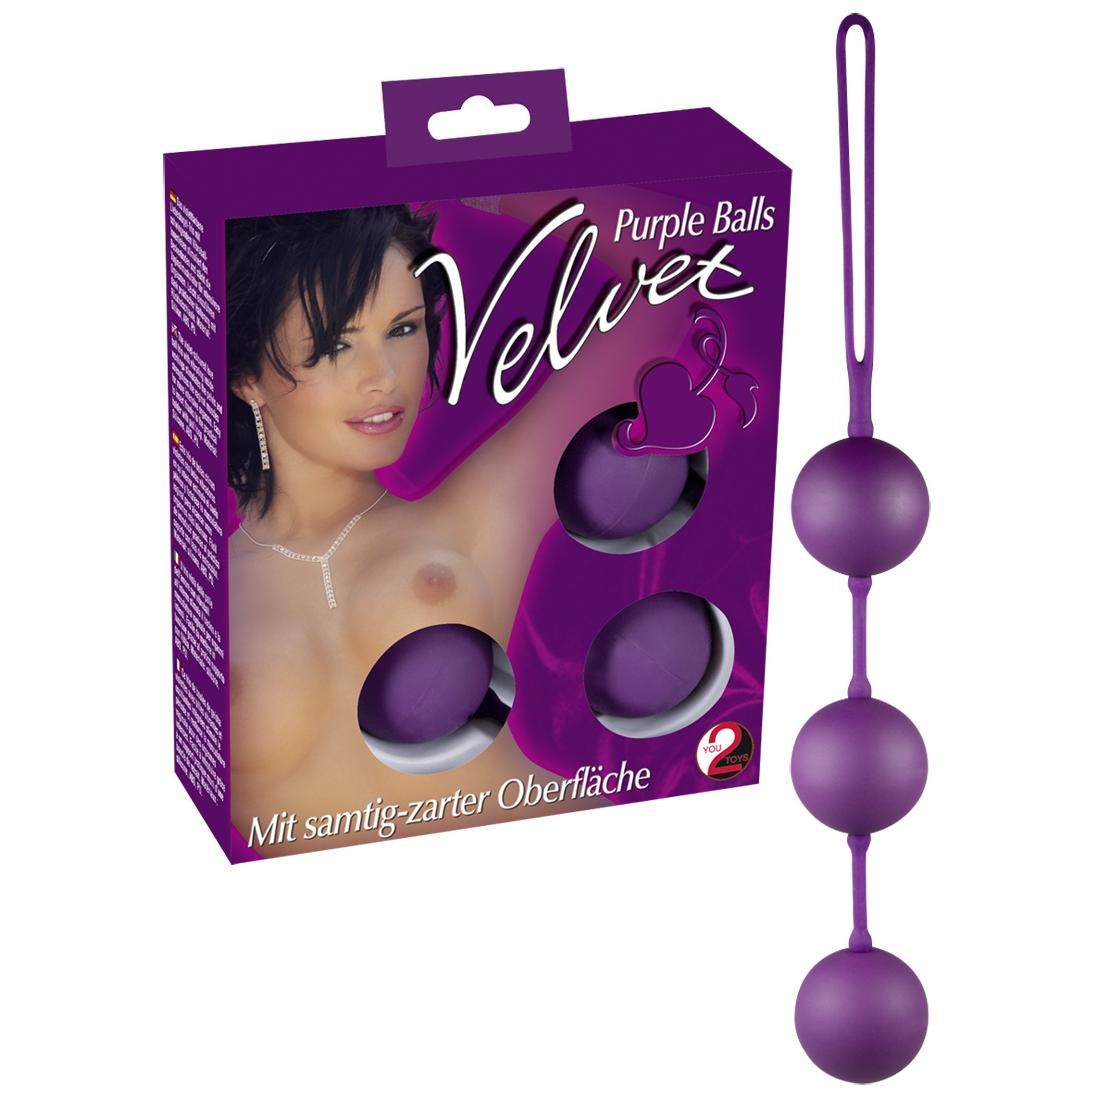  You2Toys  -  Velvet  Purple  Balls  3er  Liebeskugeln 